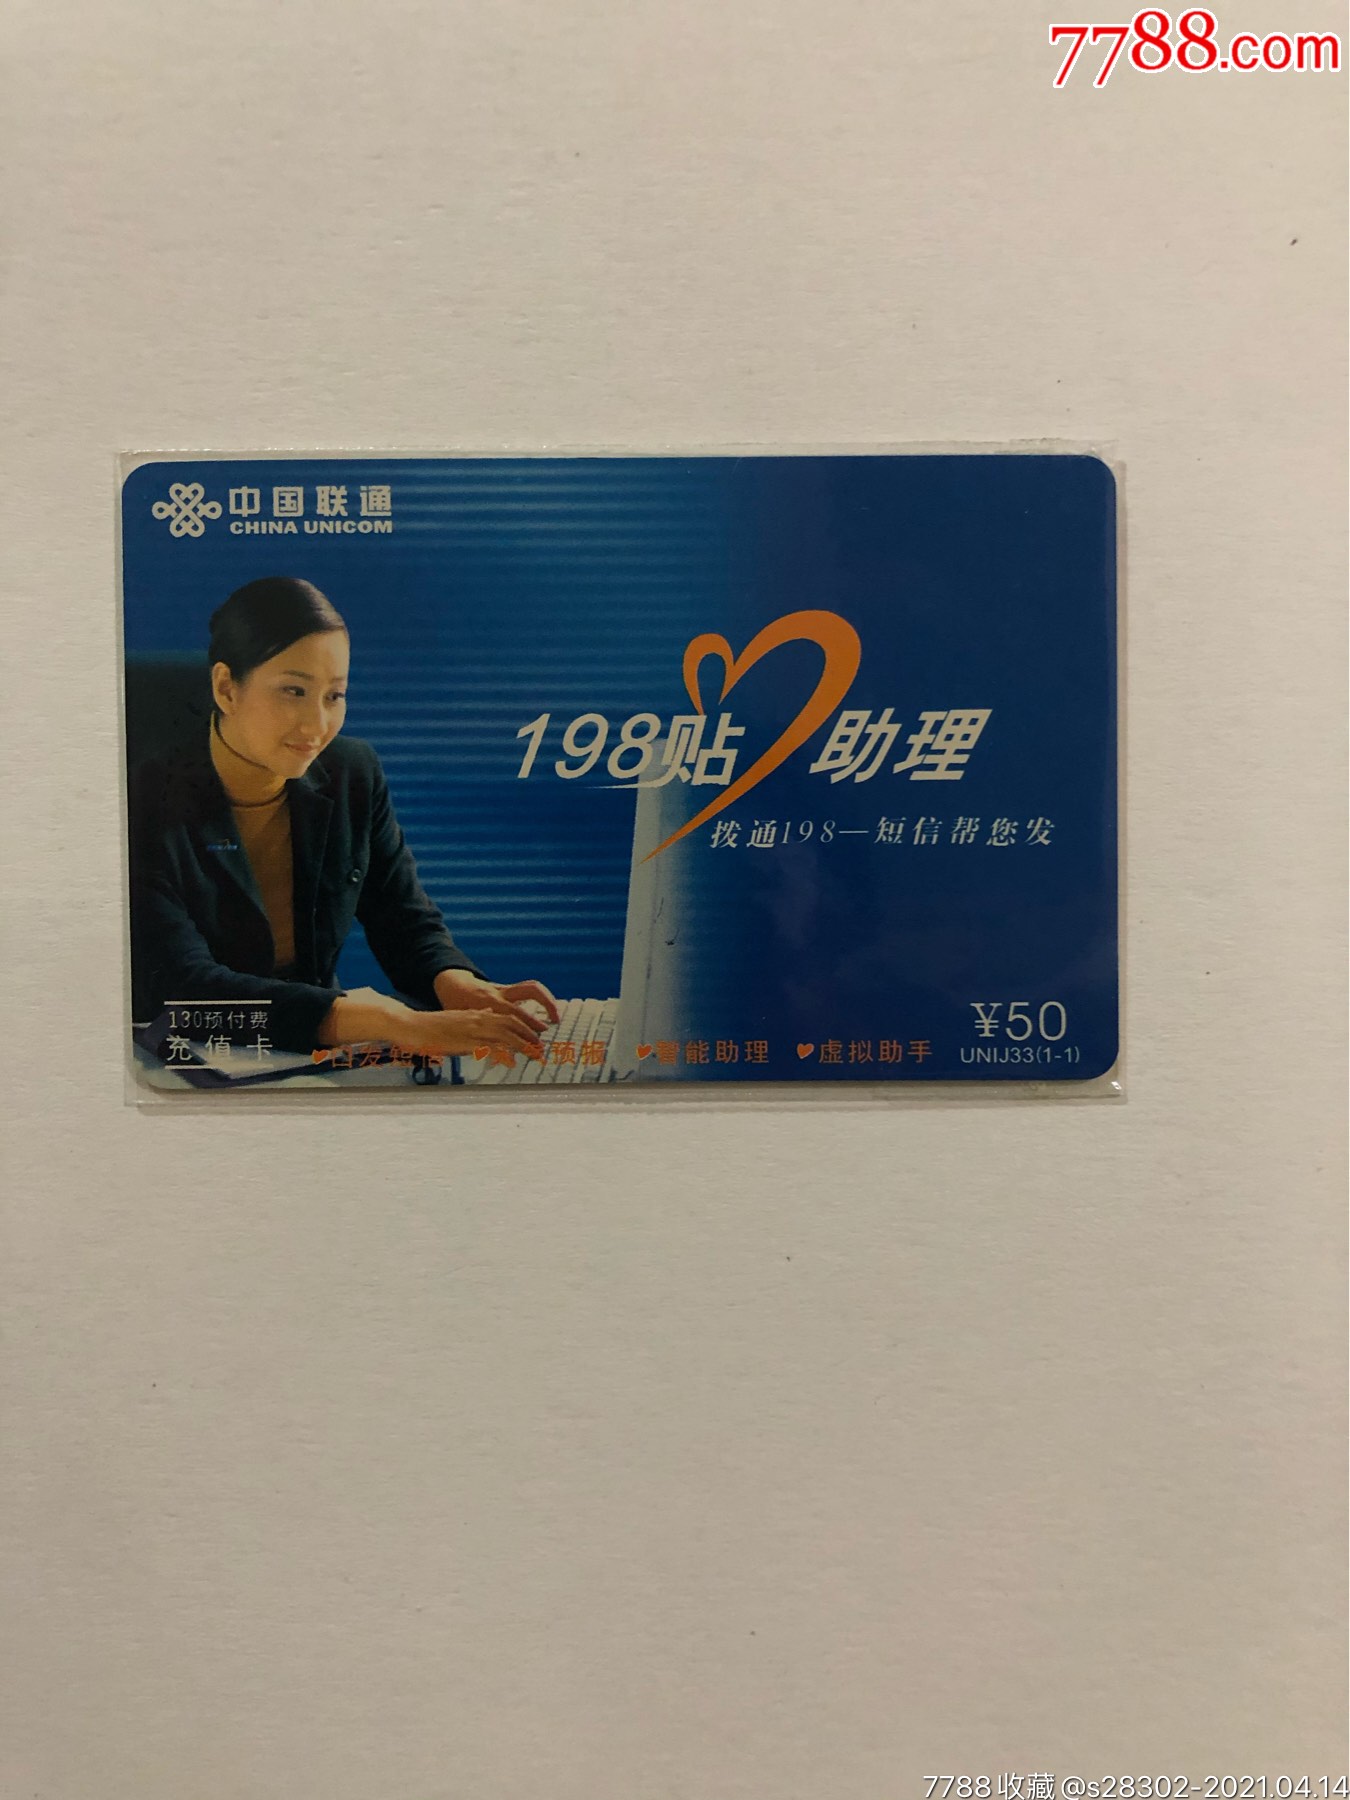 中国联通卡